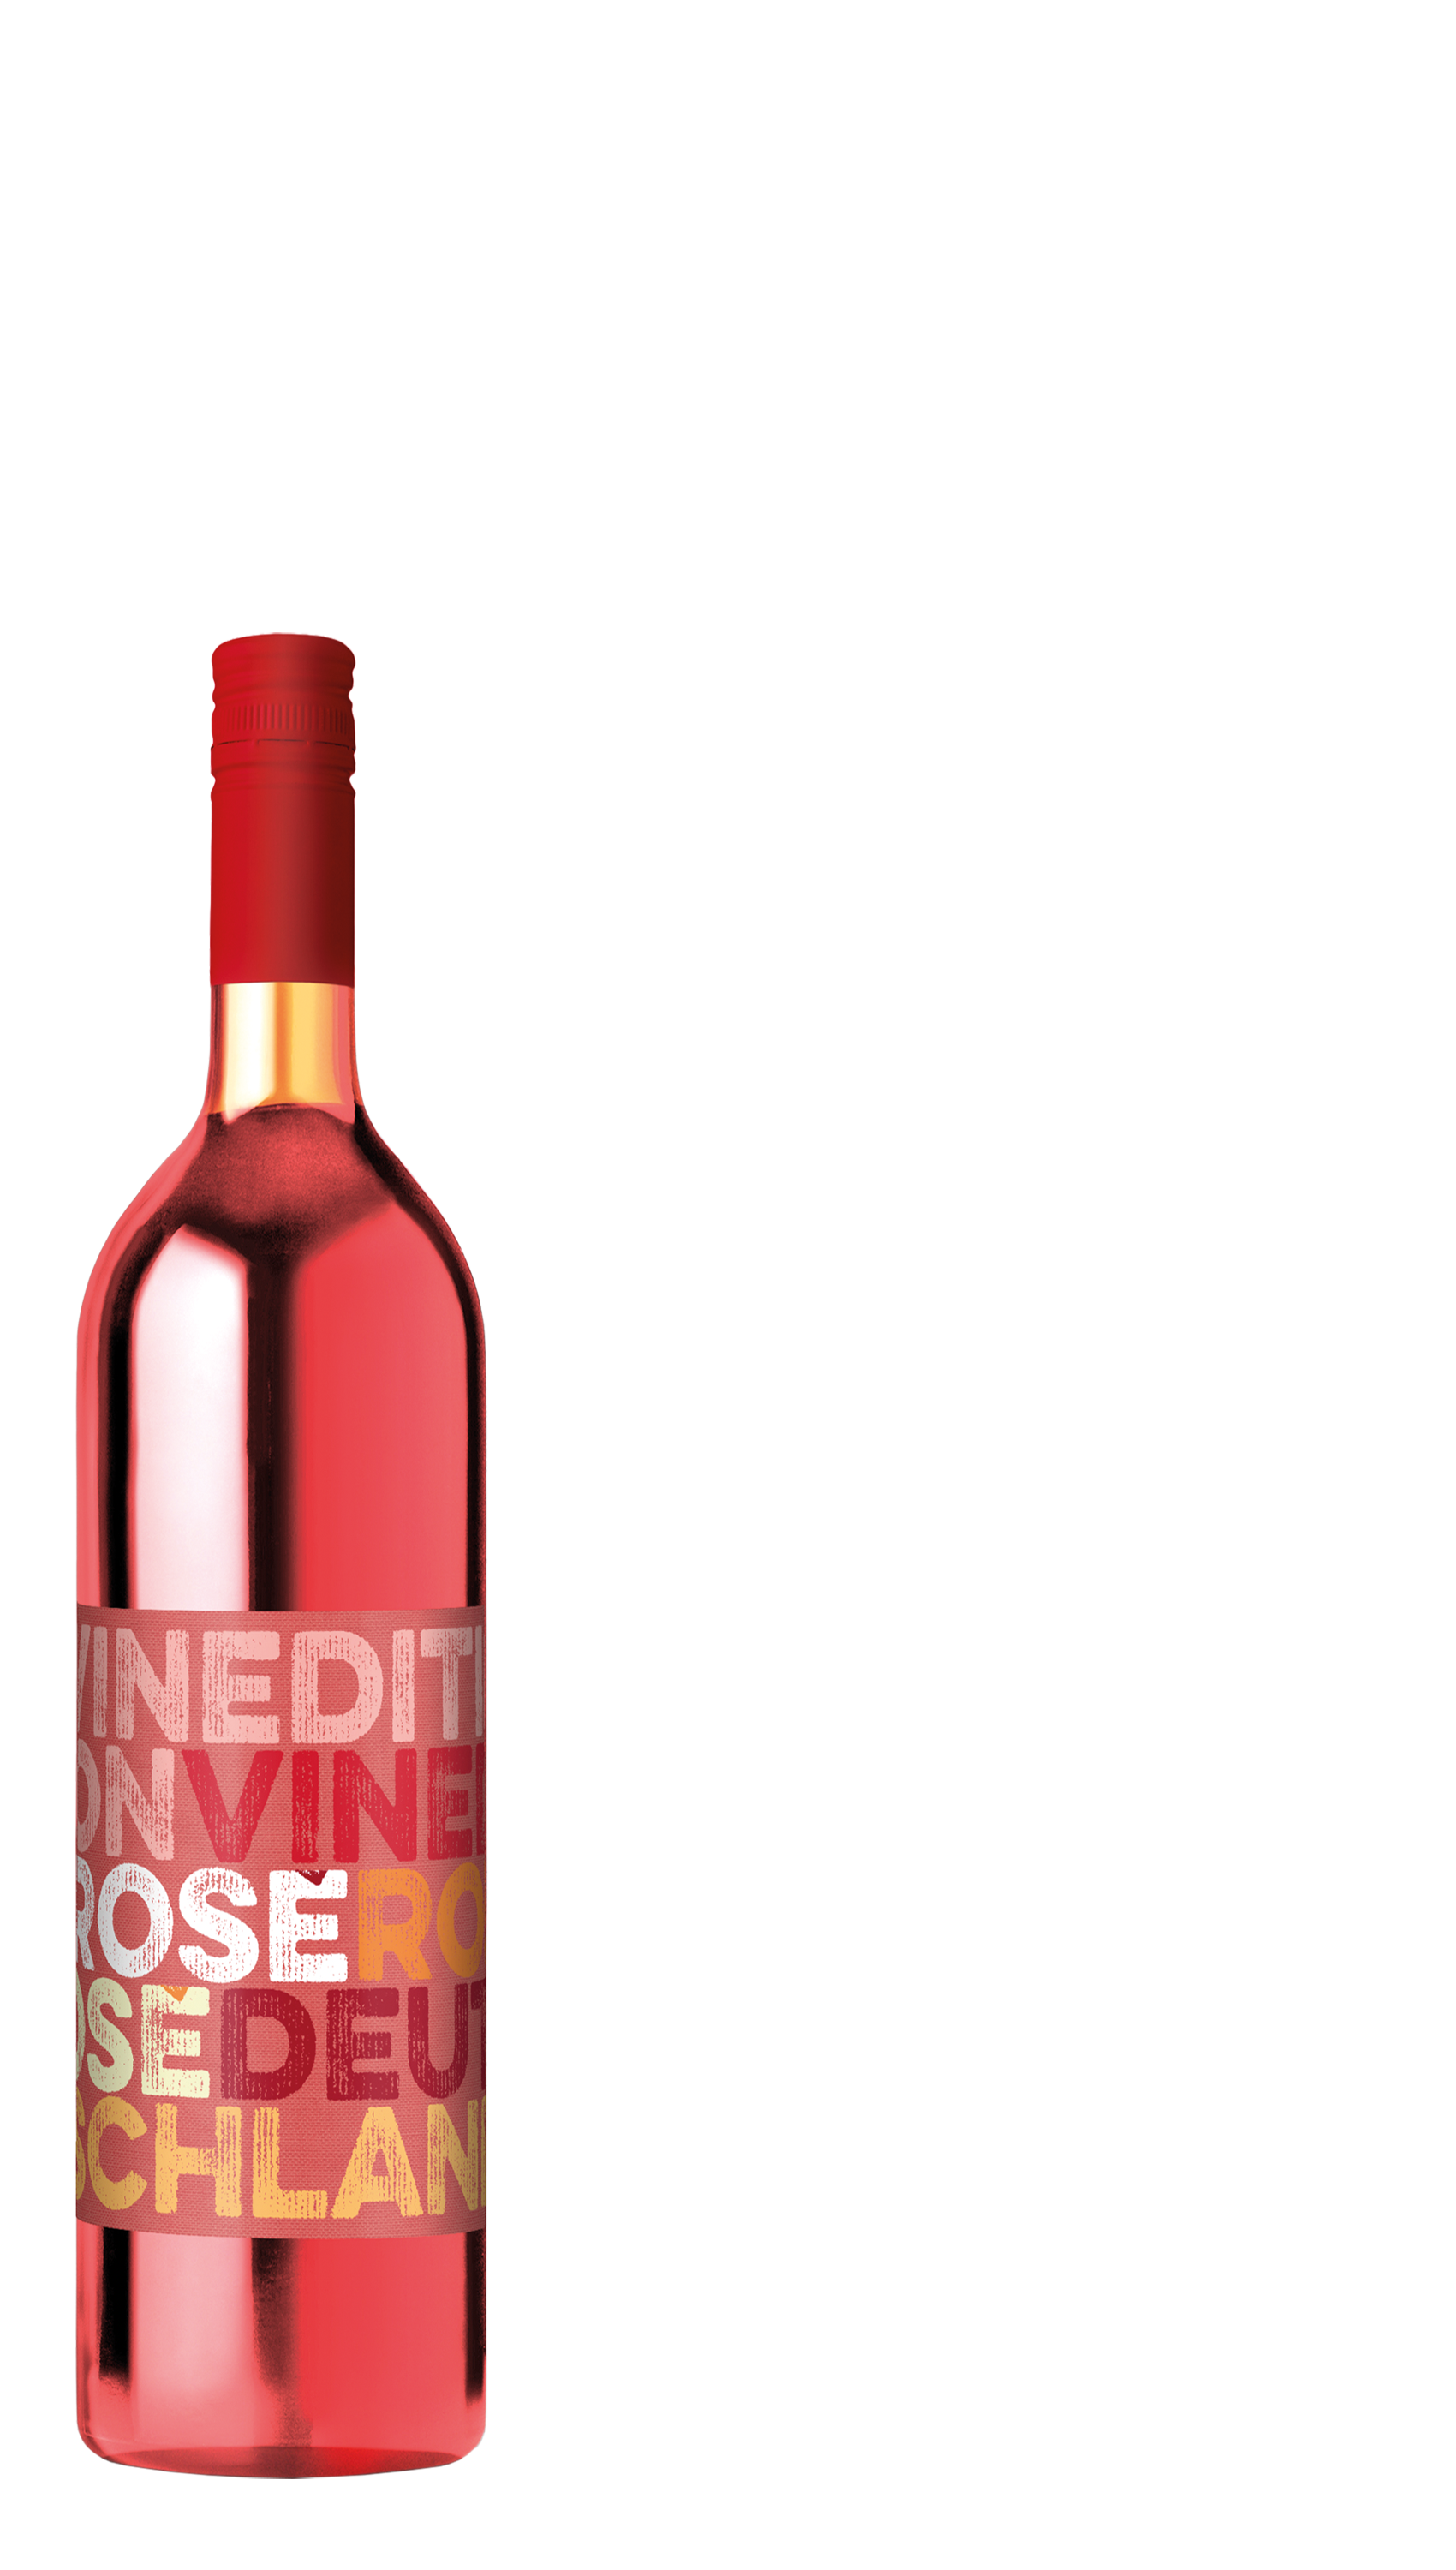 Vinedition Dornfelder Rosé halbtrocken  